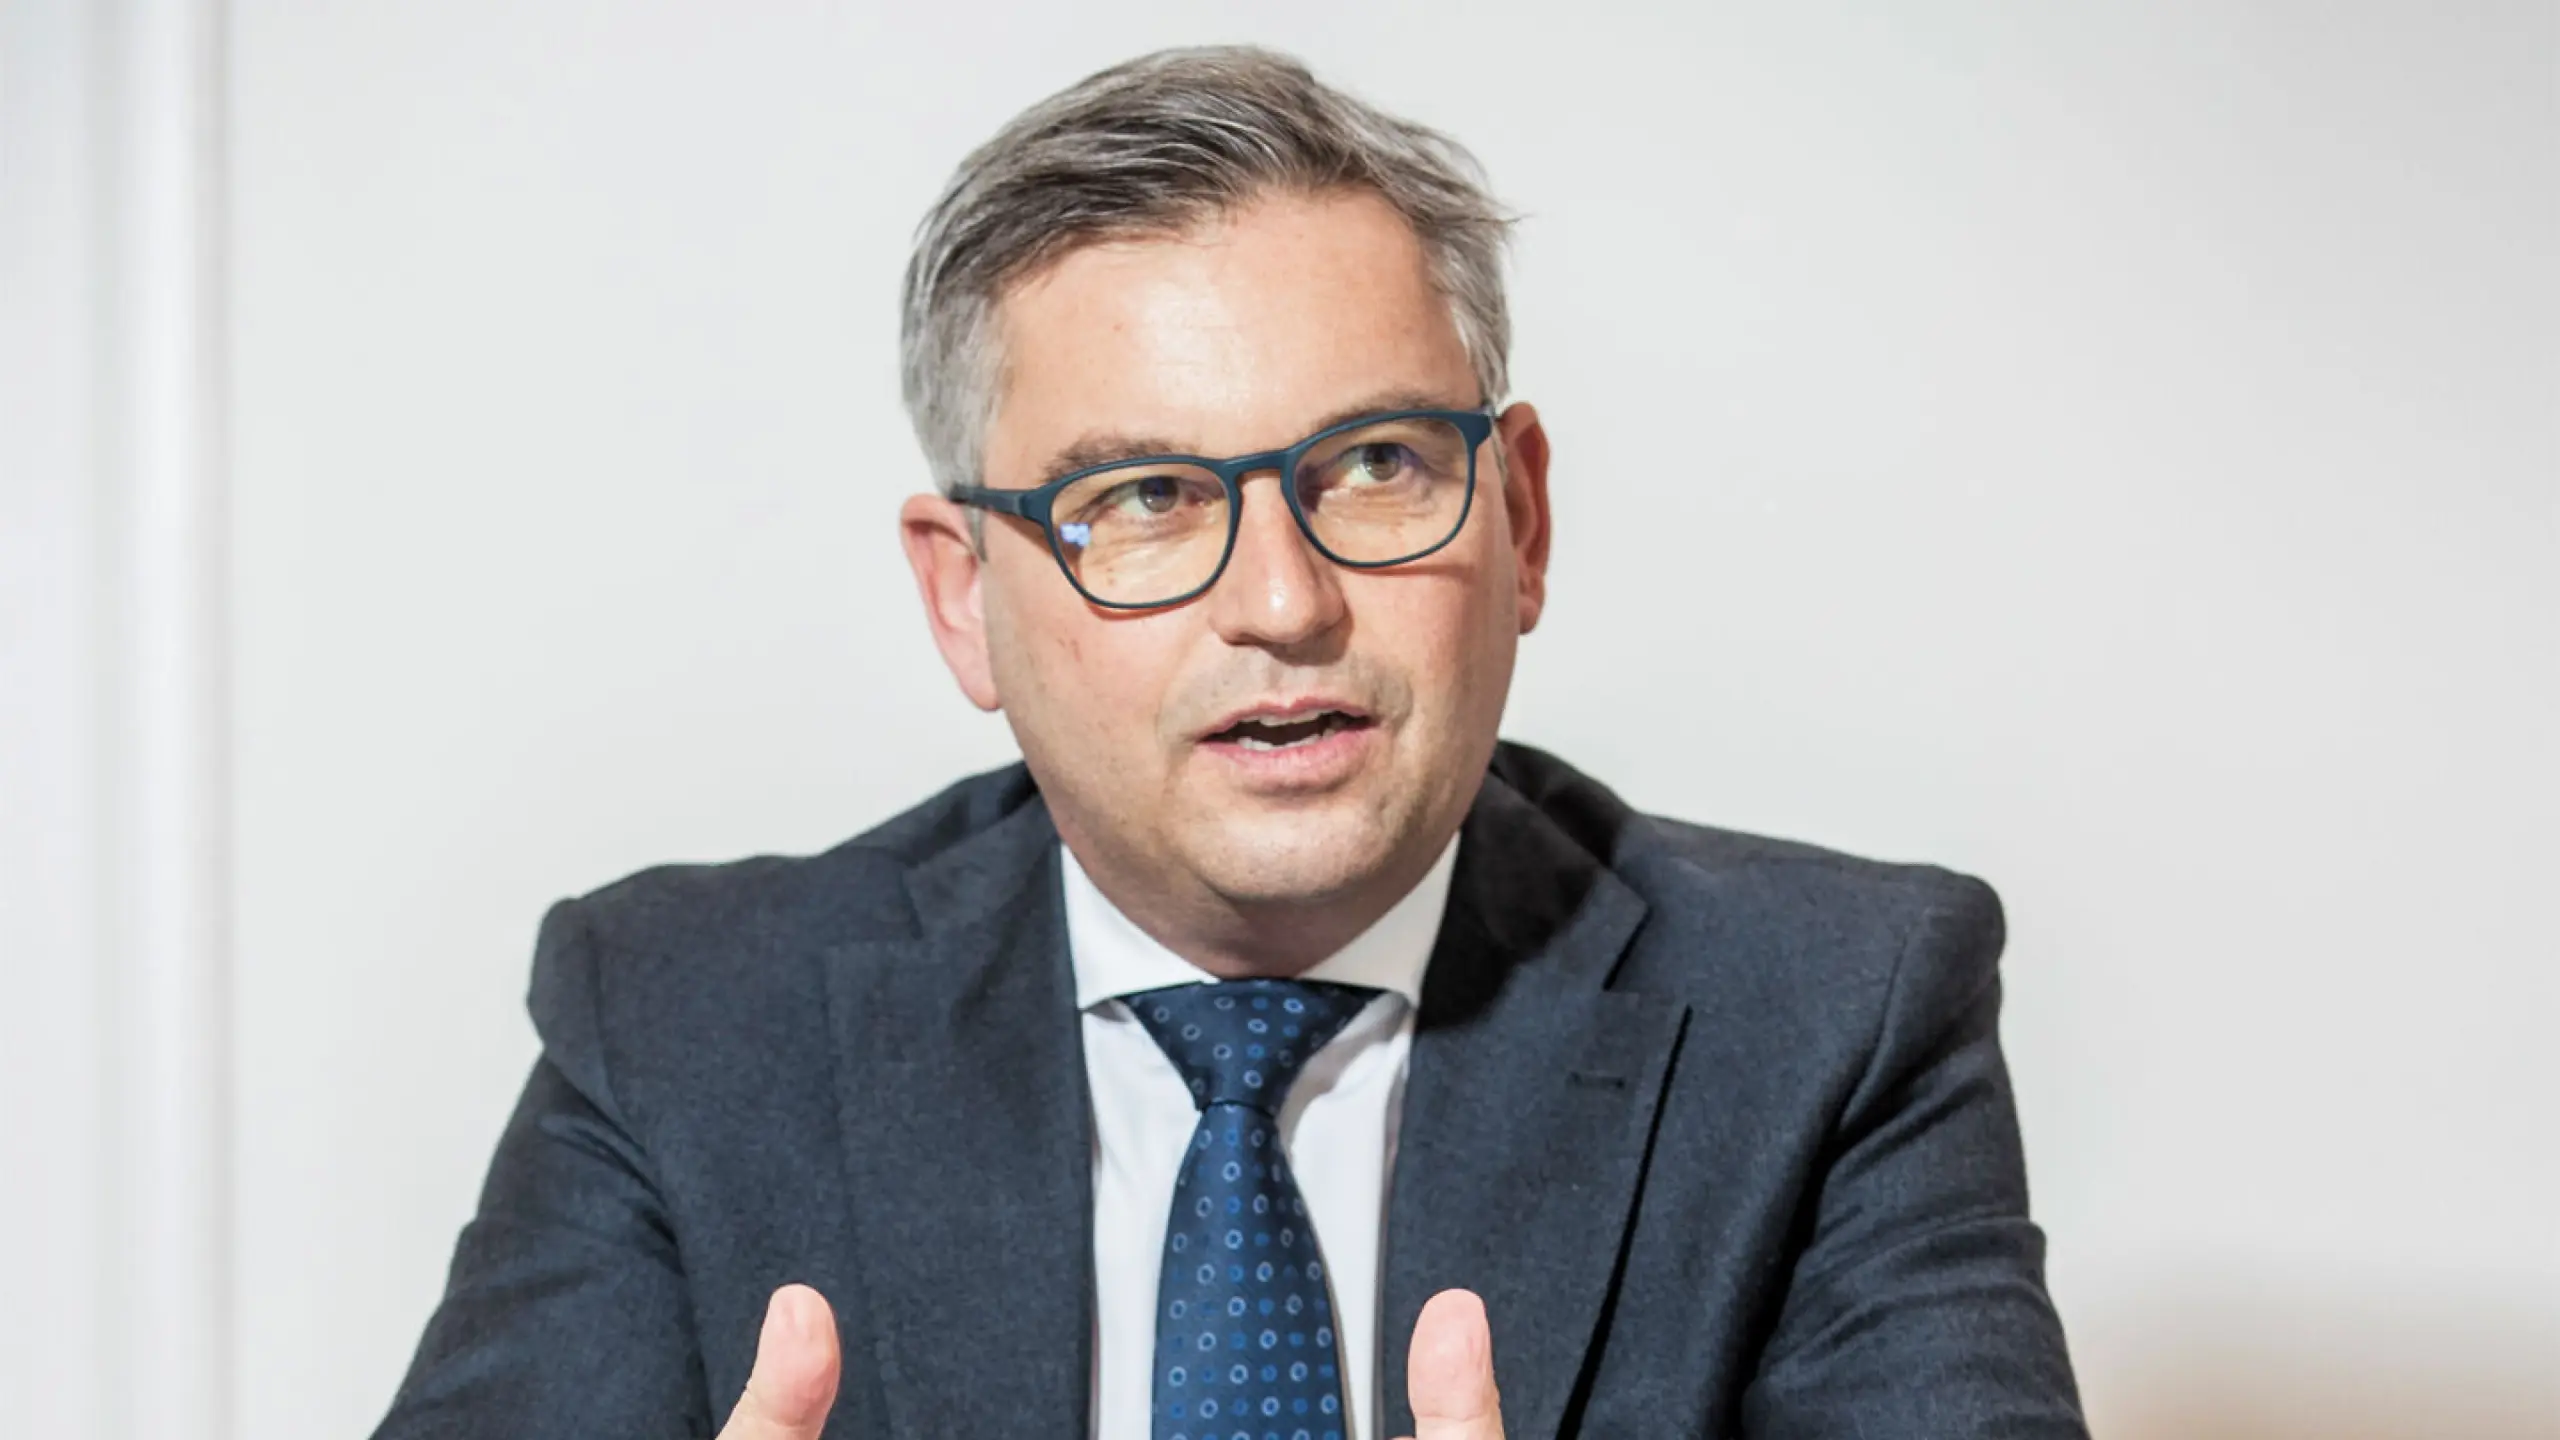 Finanzminister Magnus Brunner: "Was populär klingt, muss nicht sinnvoll sein" [INTERVIEW]